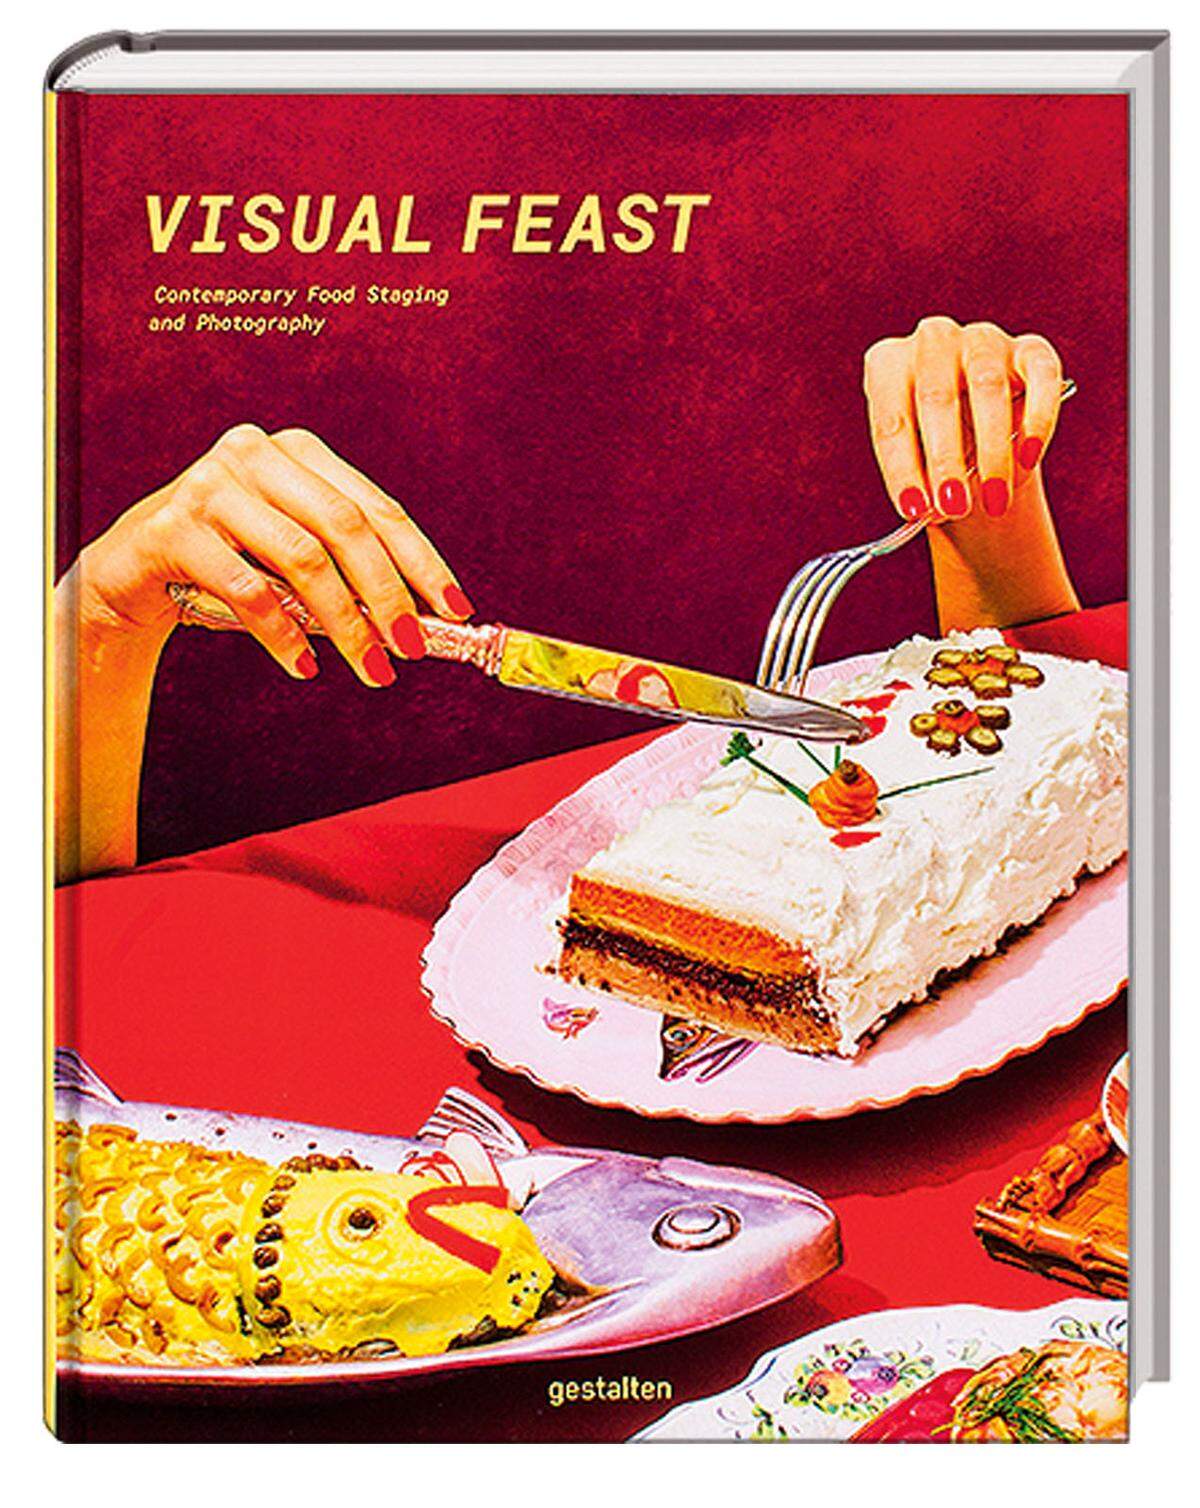 Der Band "Visual Feast" zeigt die Vielfalt von überinszenierten und überzeichneten Fotos von Essen in Werbung oder Magazinstrecken, deren Ziel nicht immer nur das Wecken von Appetit ist, sondern auch Verstörung und Konsumkritik. (Gestalten, 41,10 Euro).